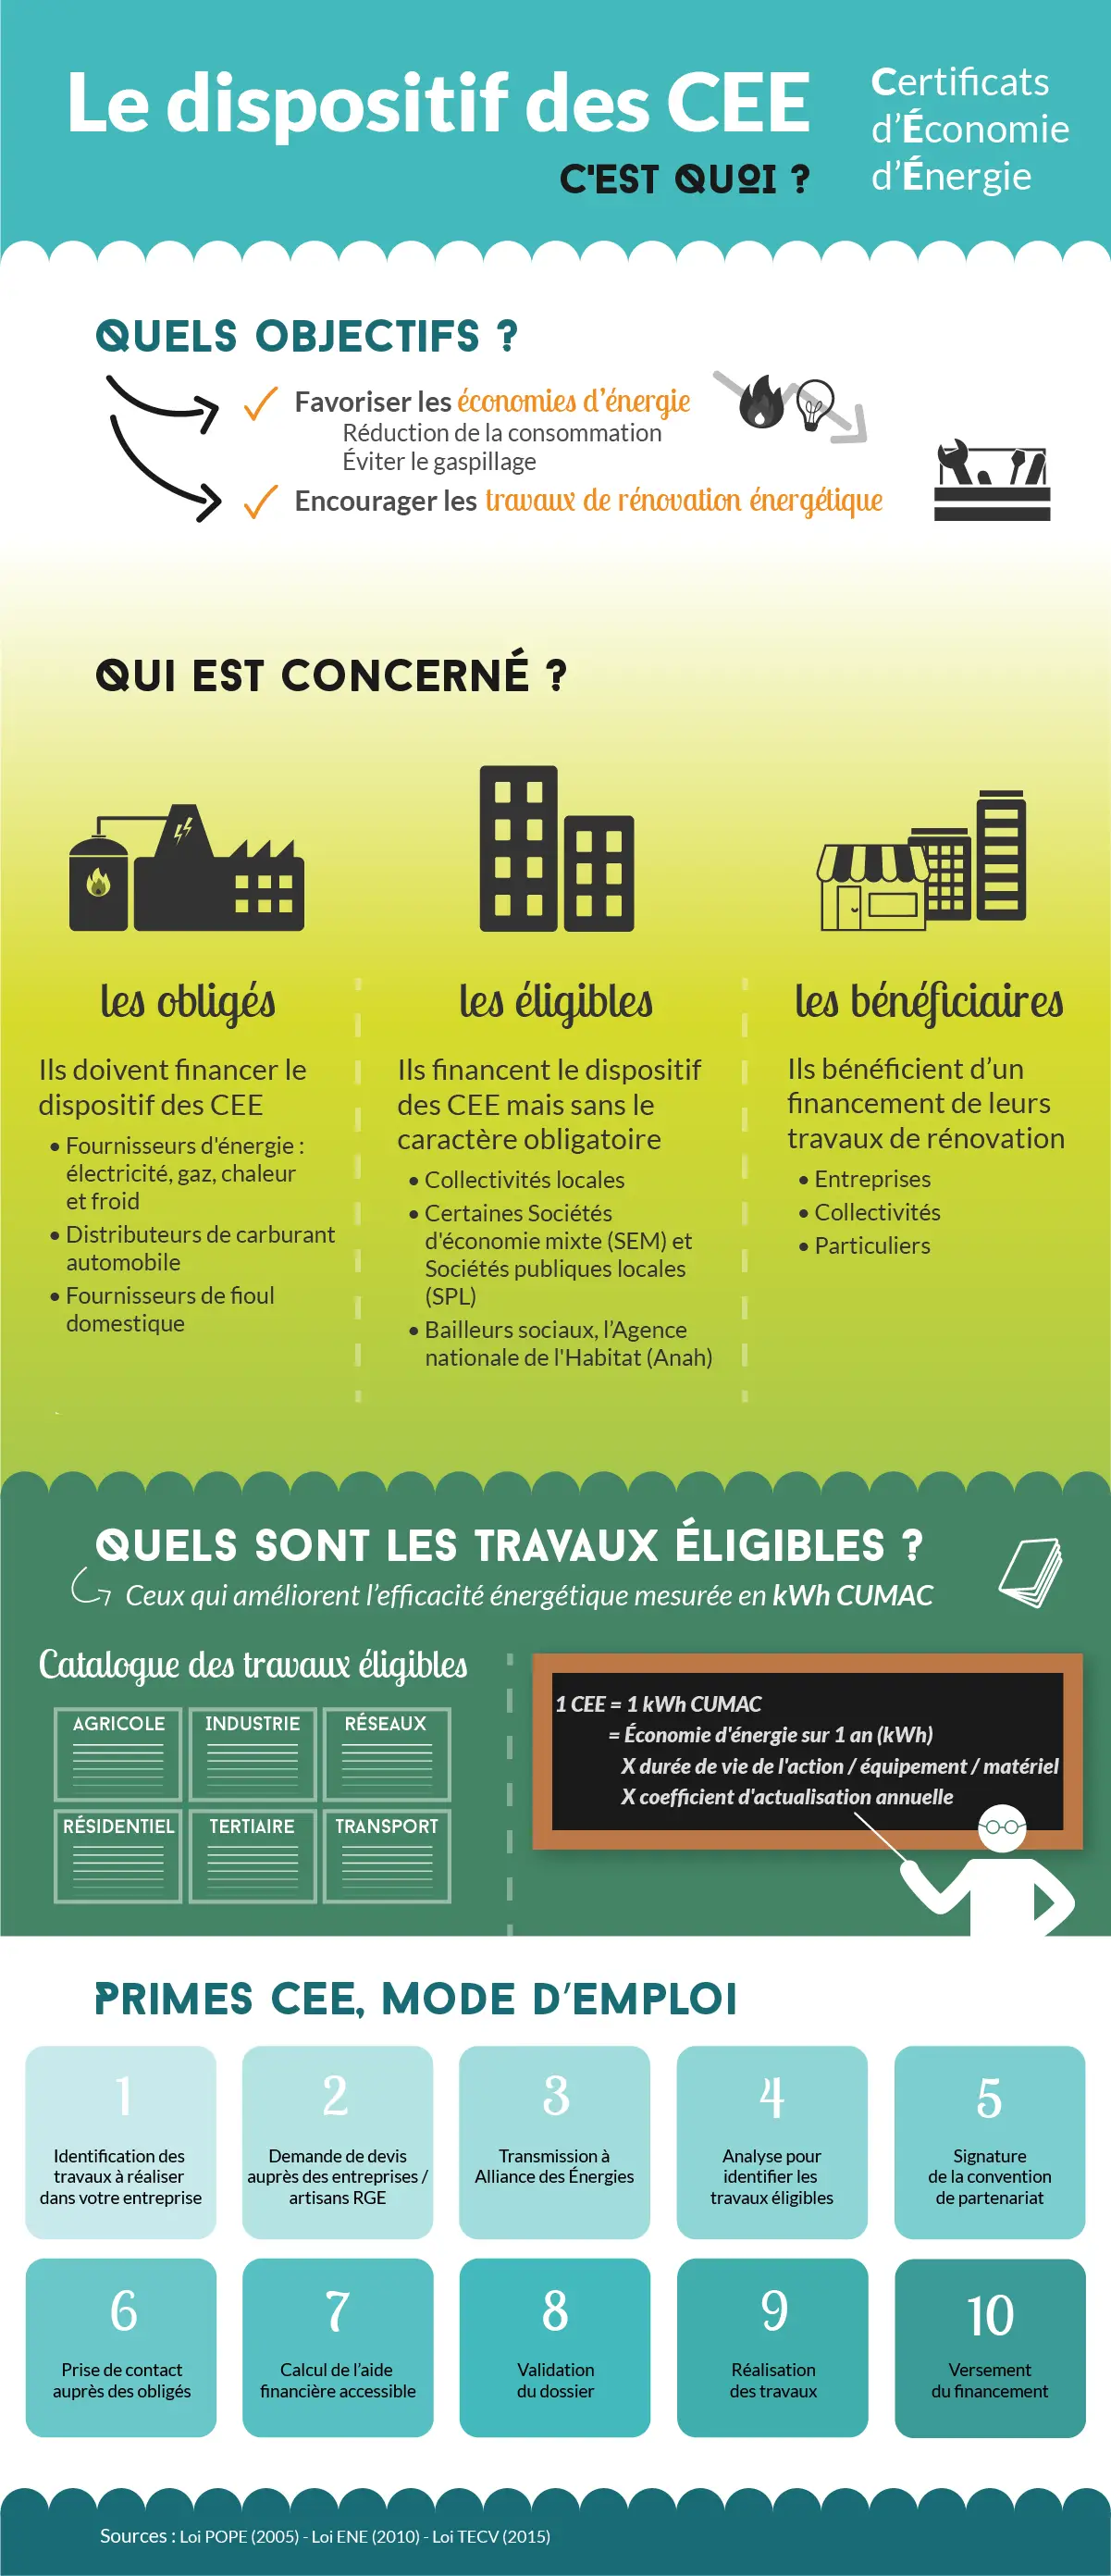 Infographie sur les C2E - Certificats d'économie d'énergie